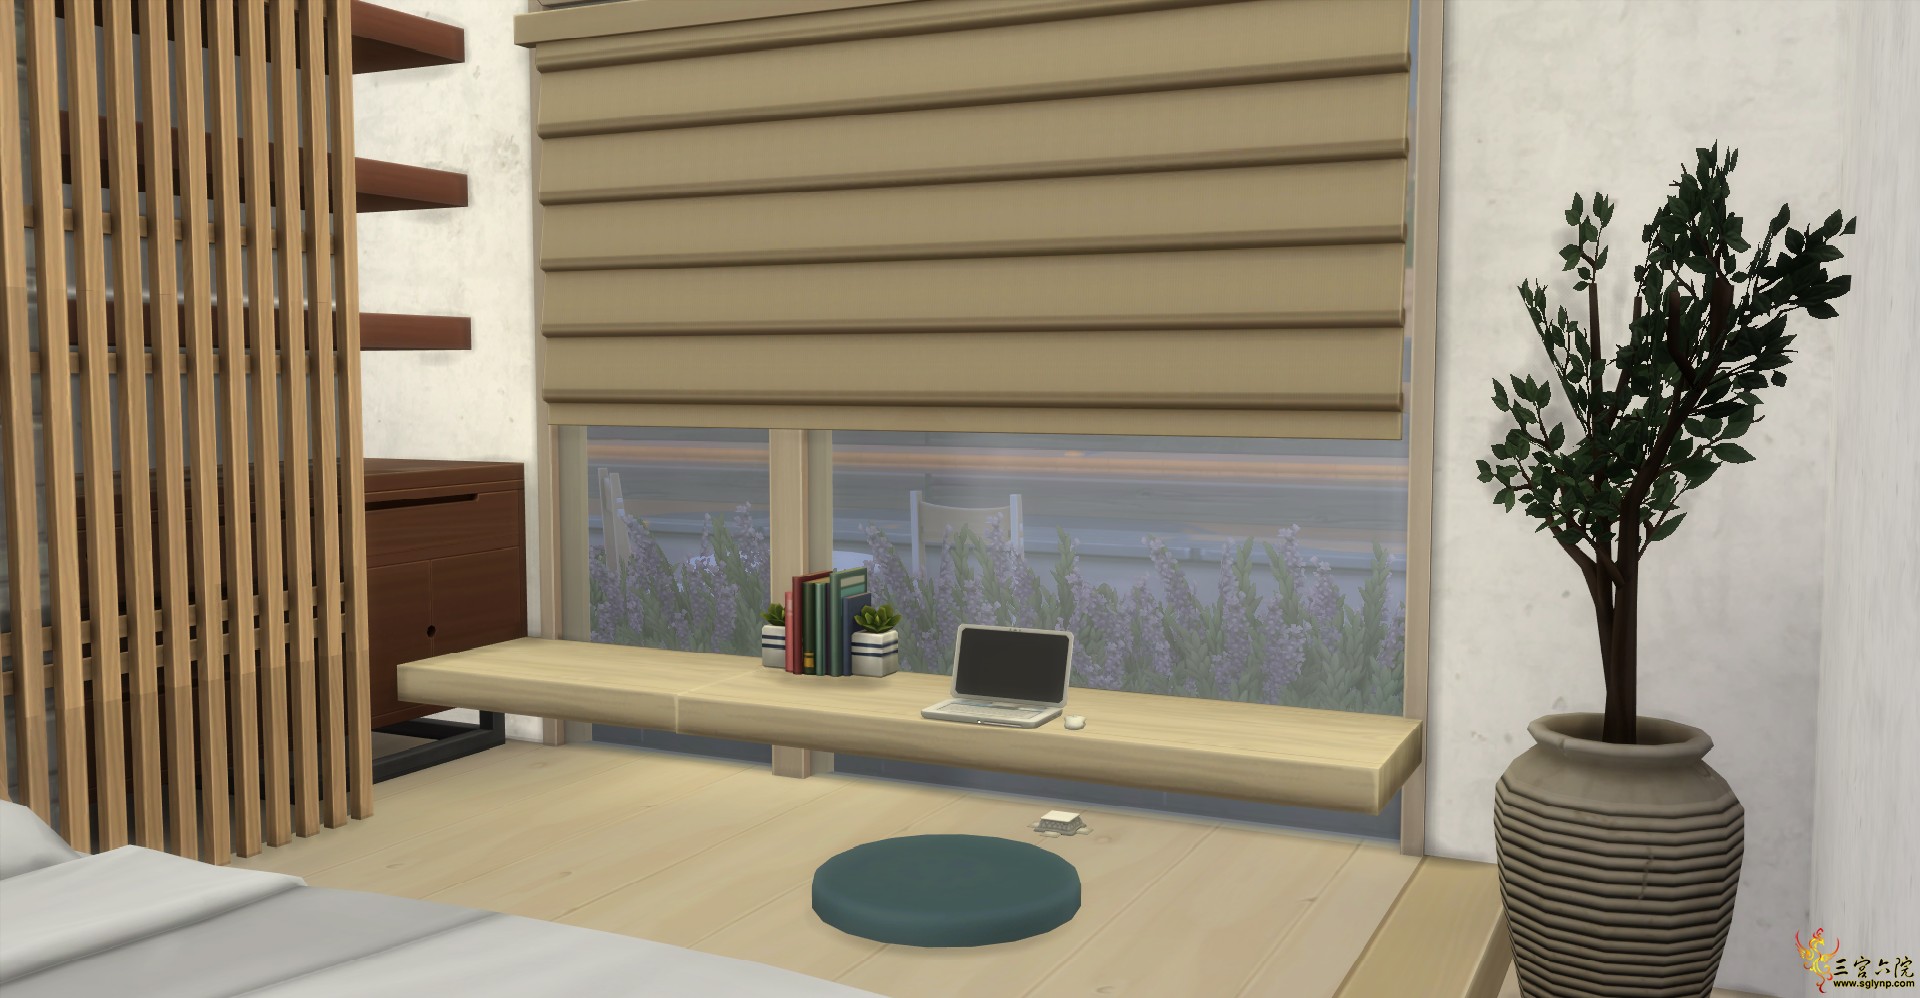 Sims 4 Screenshot 2021.05.10 - 19.51.04.50.png